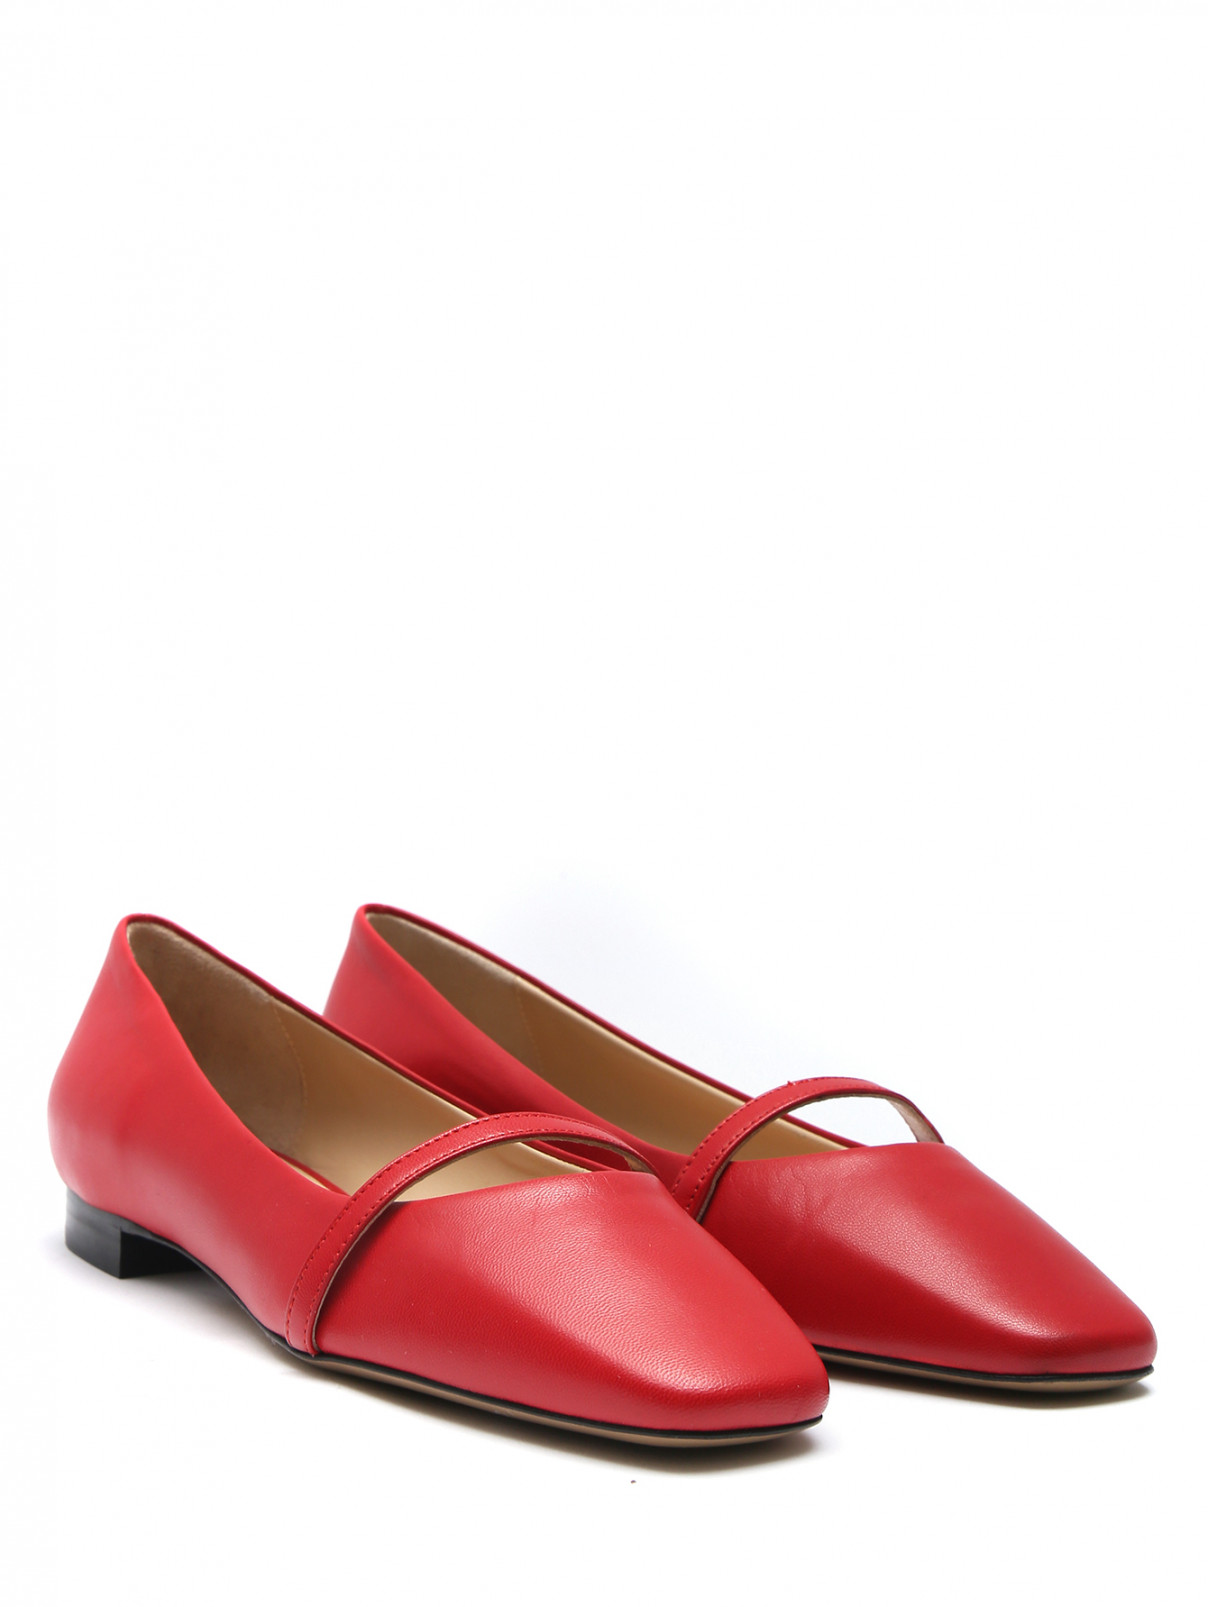 Туфли из кожи на низком каблуке Marina Rinaldi  –  Общий вид  – Цвет:  Красный